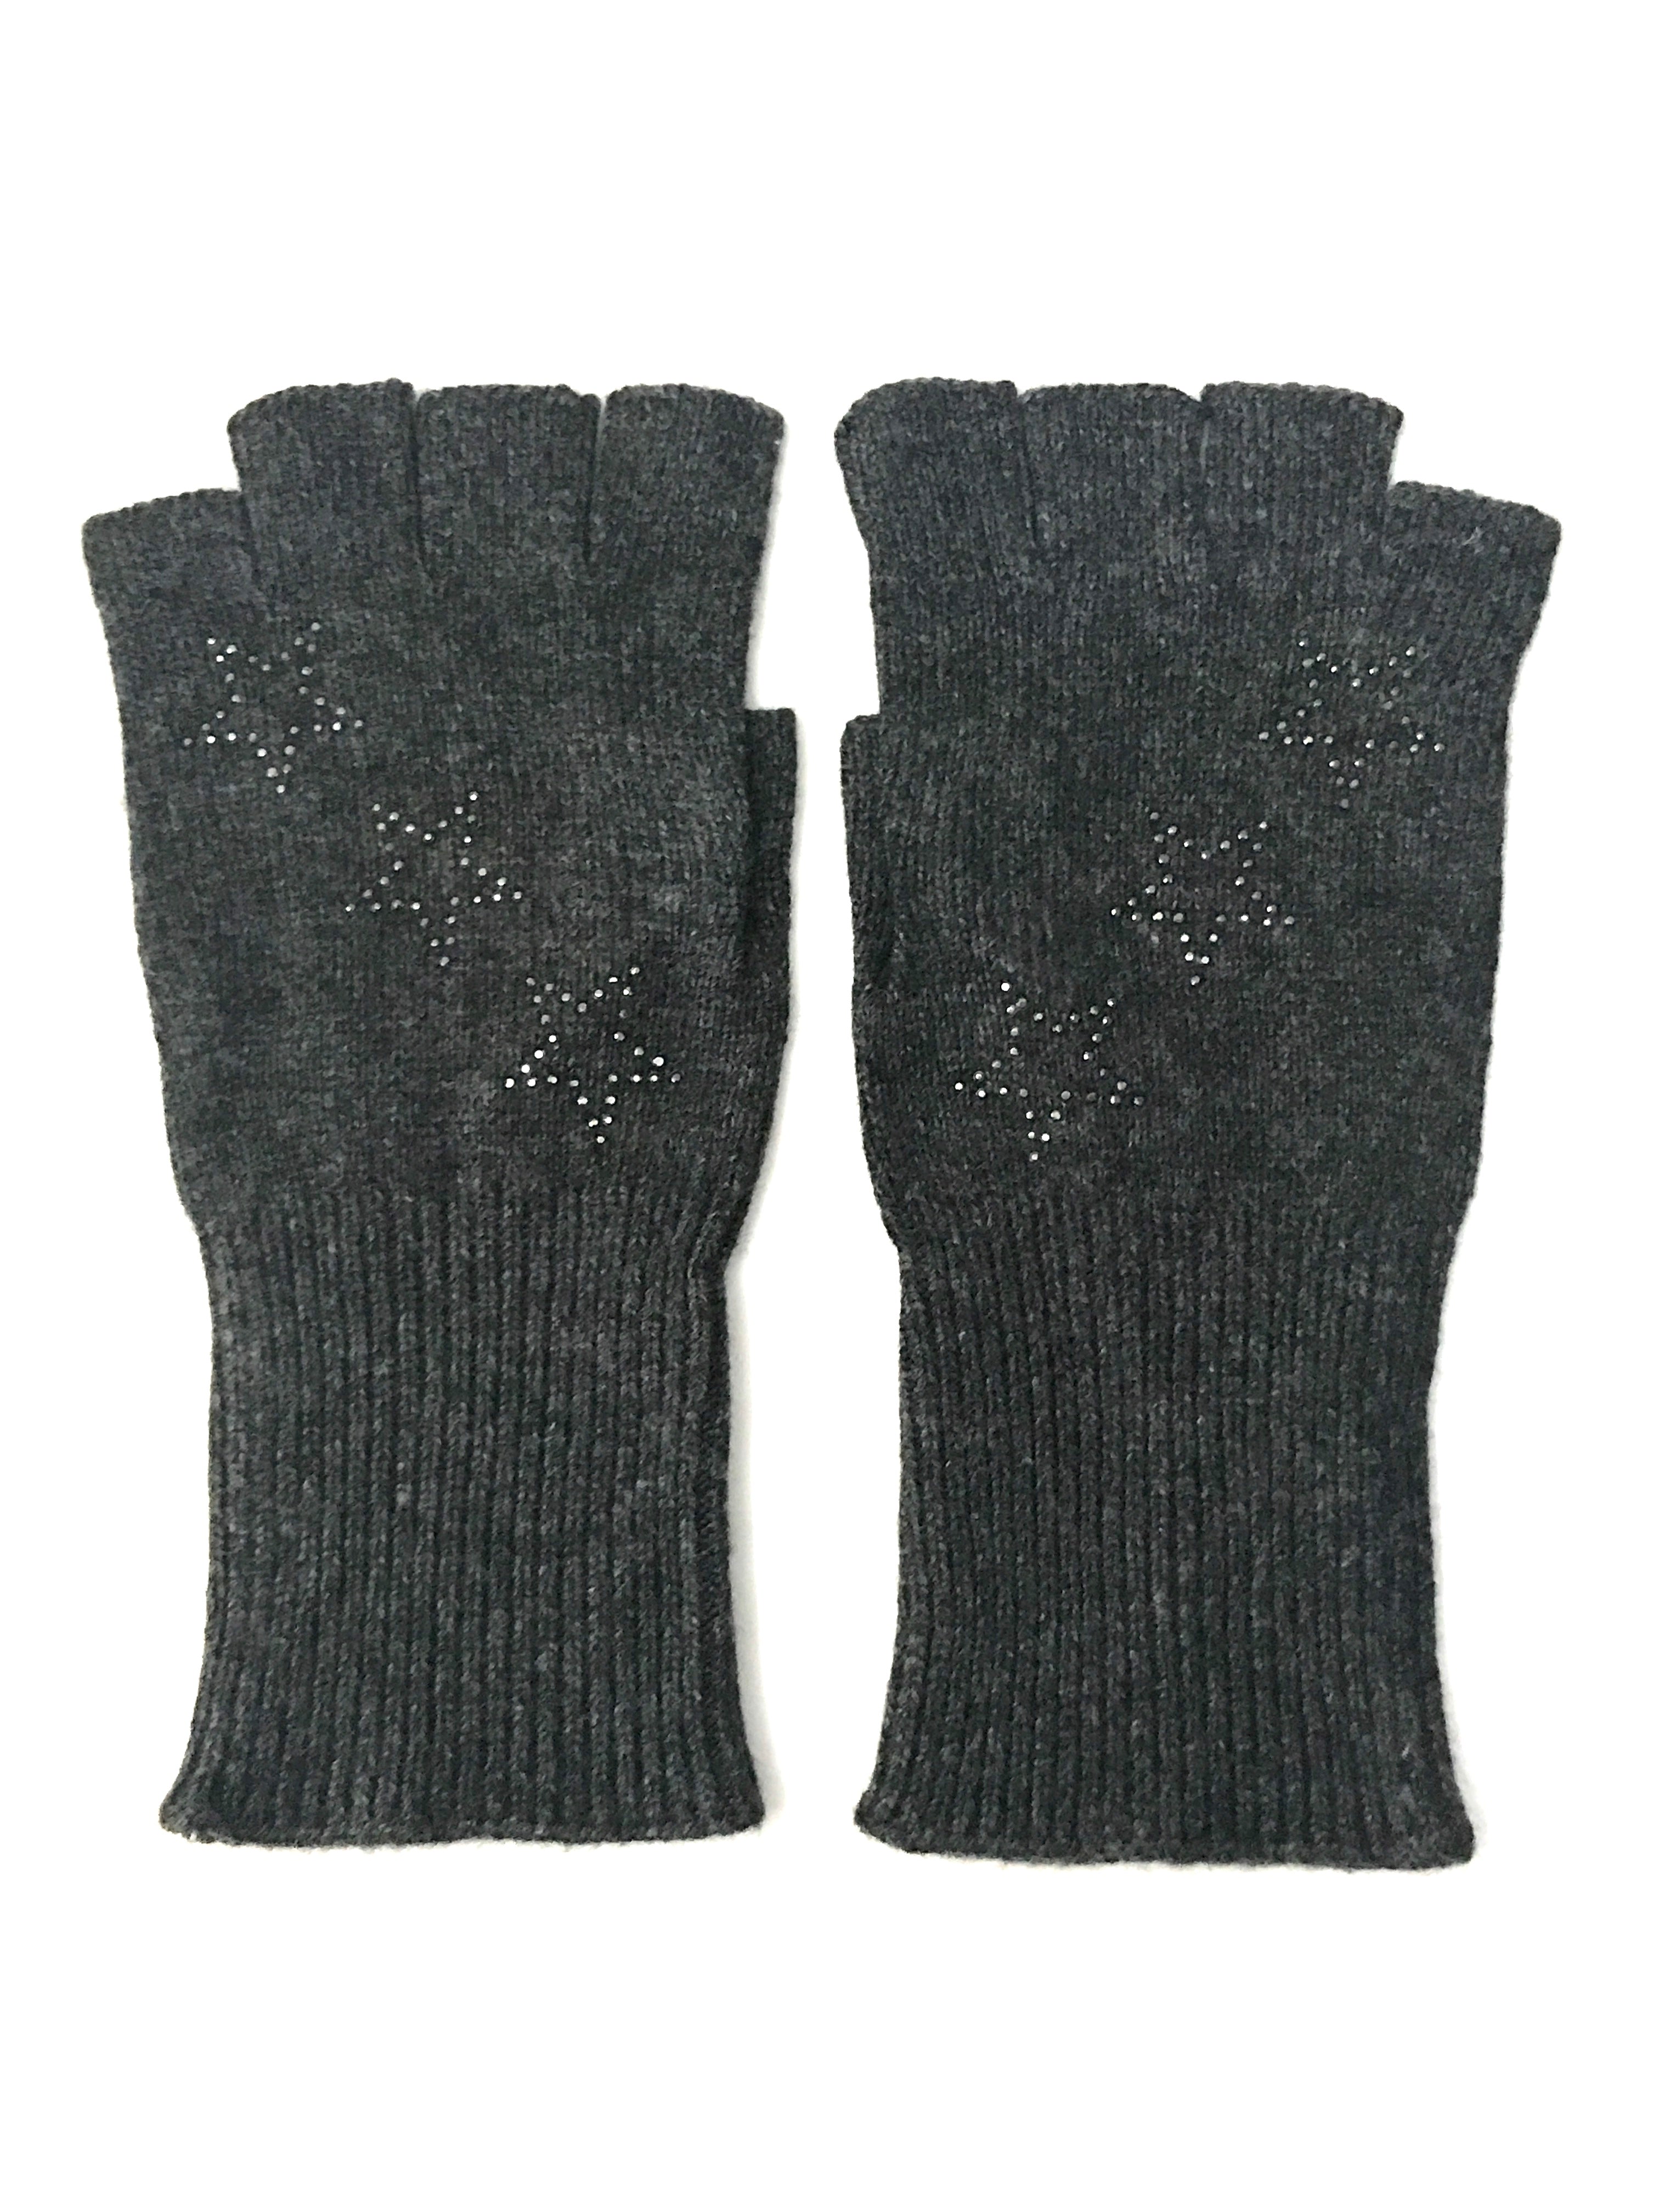 star fingerless gloves charcoal/hematite stars